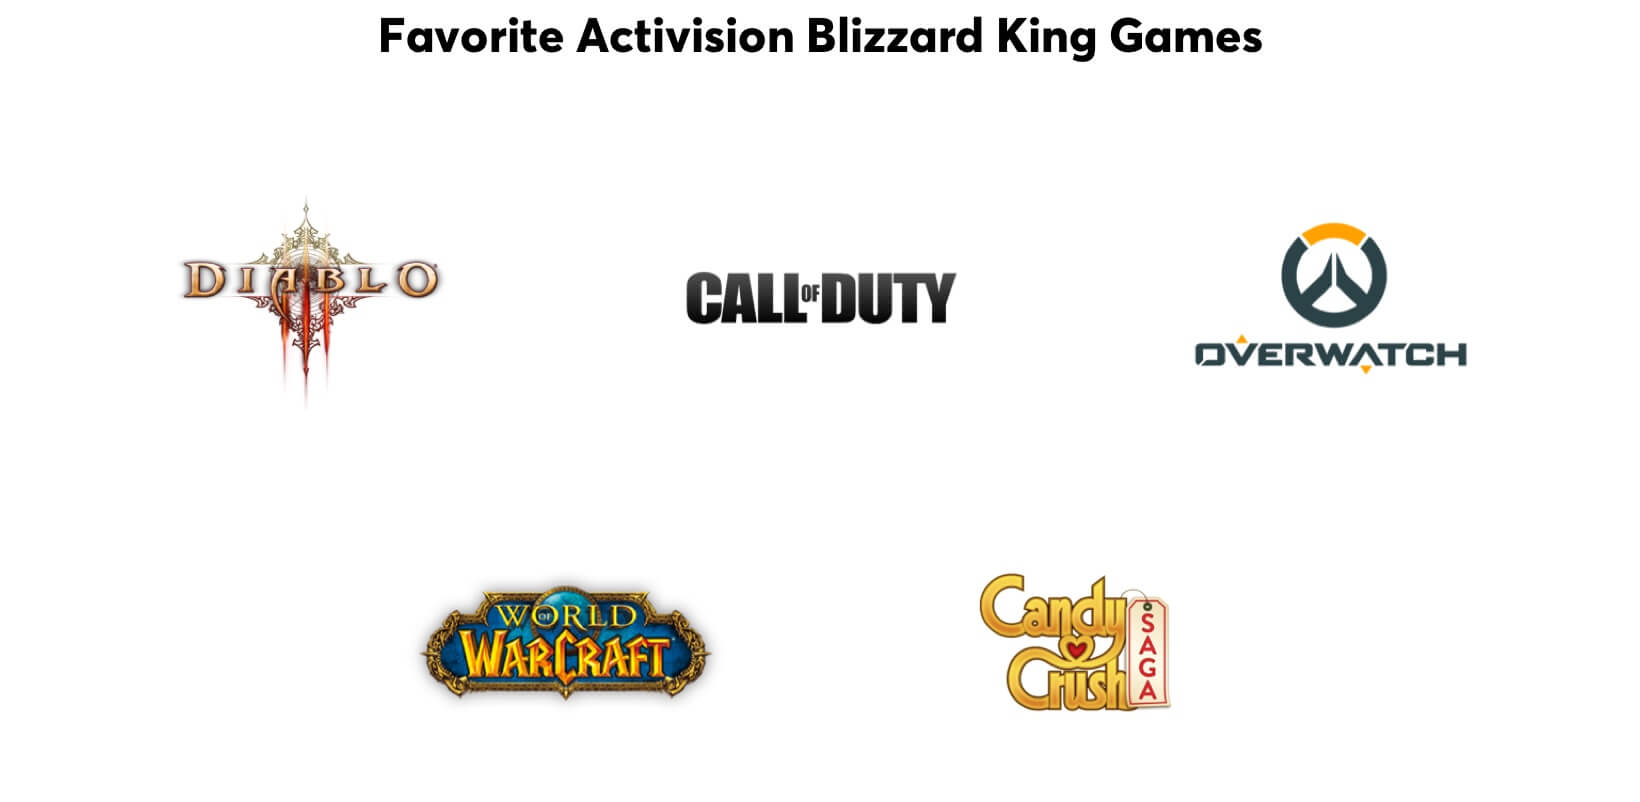 Les jeux préférés des Maîtres des Niveaux : Diablo, Call of Duty, Overwatch, World of WarCraft, Candy Crush